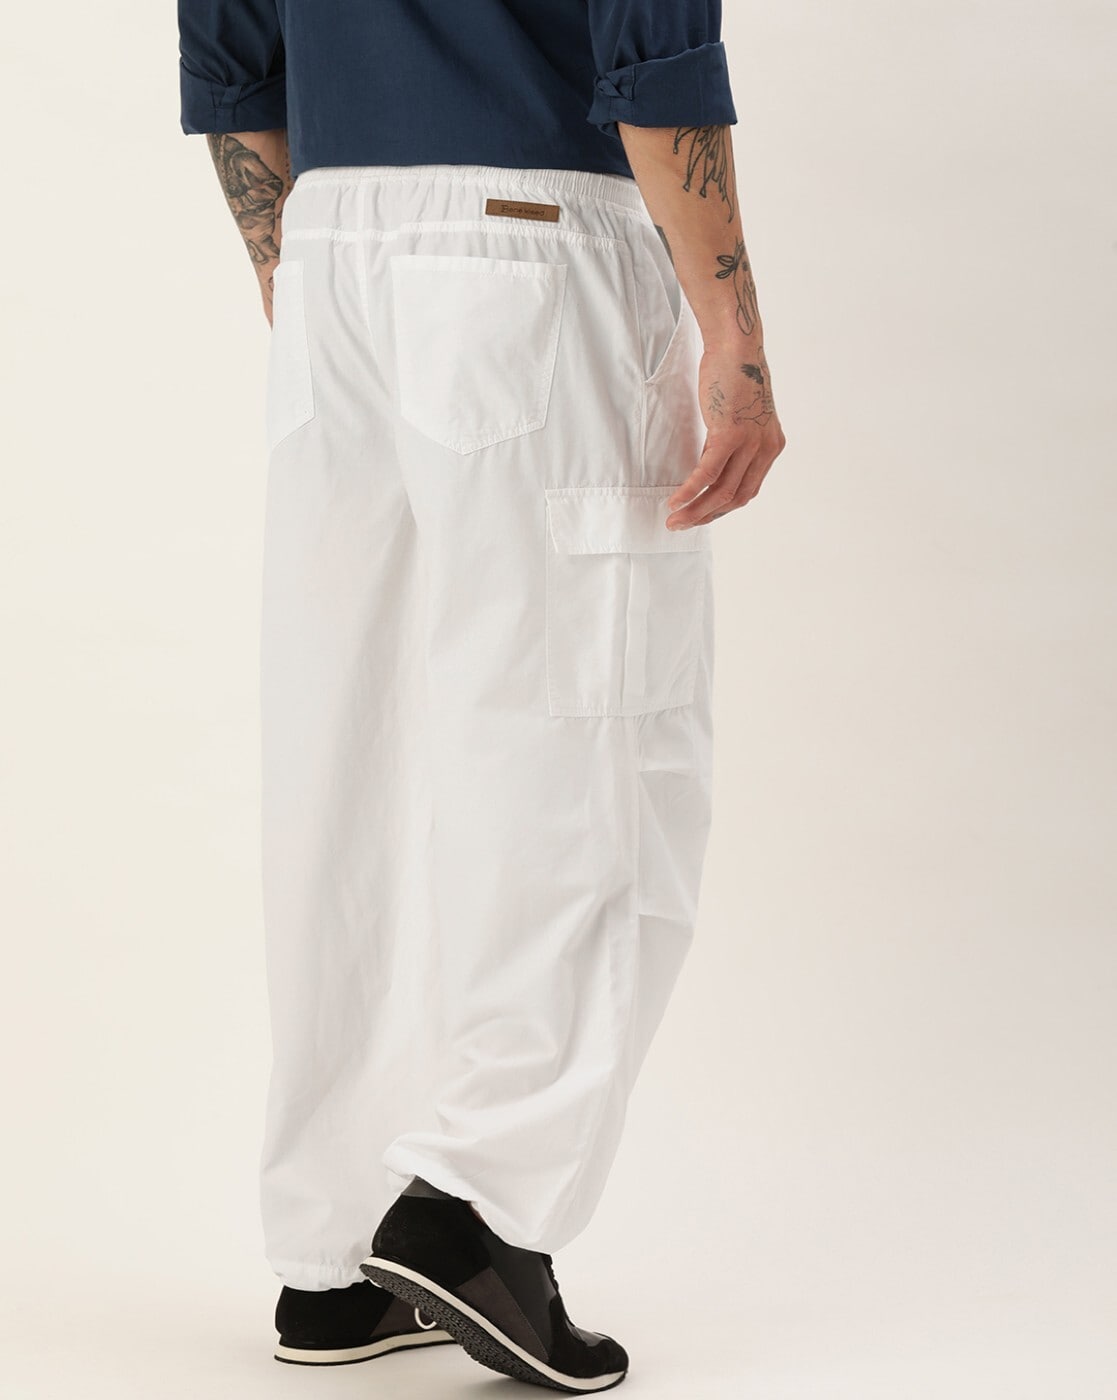 Men's White Linen Pants | Tailored Linen Pants -StudioSuits